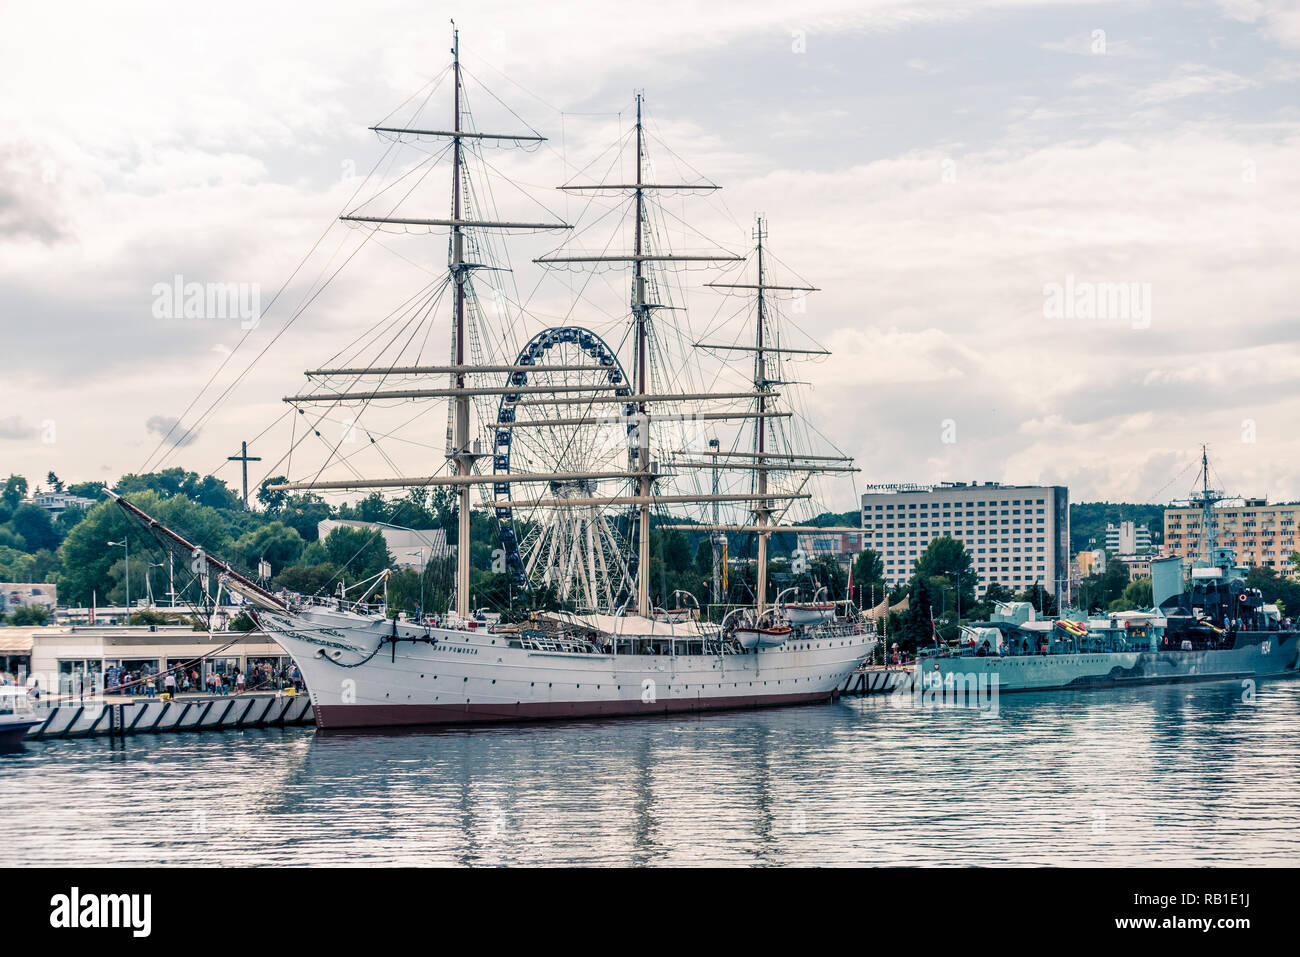 Gdynia, Poland, August 25, 2018; Sail frigate 'Dar Pomorza' and warship 'Blyslawica' destroyer from II WW period docked at wharf. Stock Photo